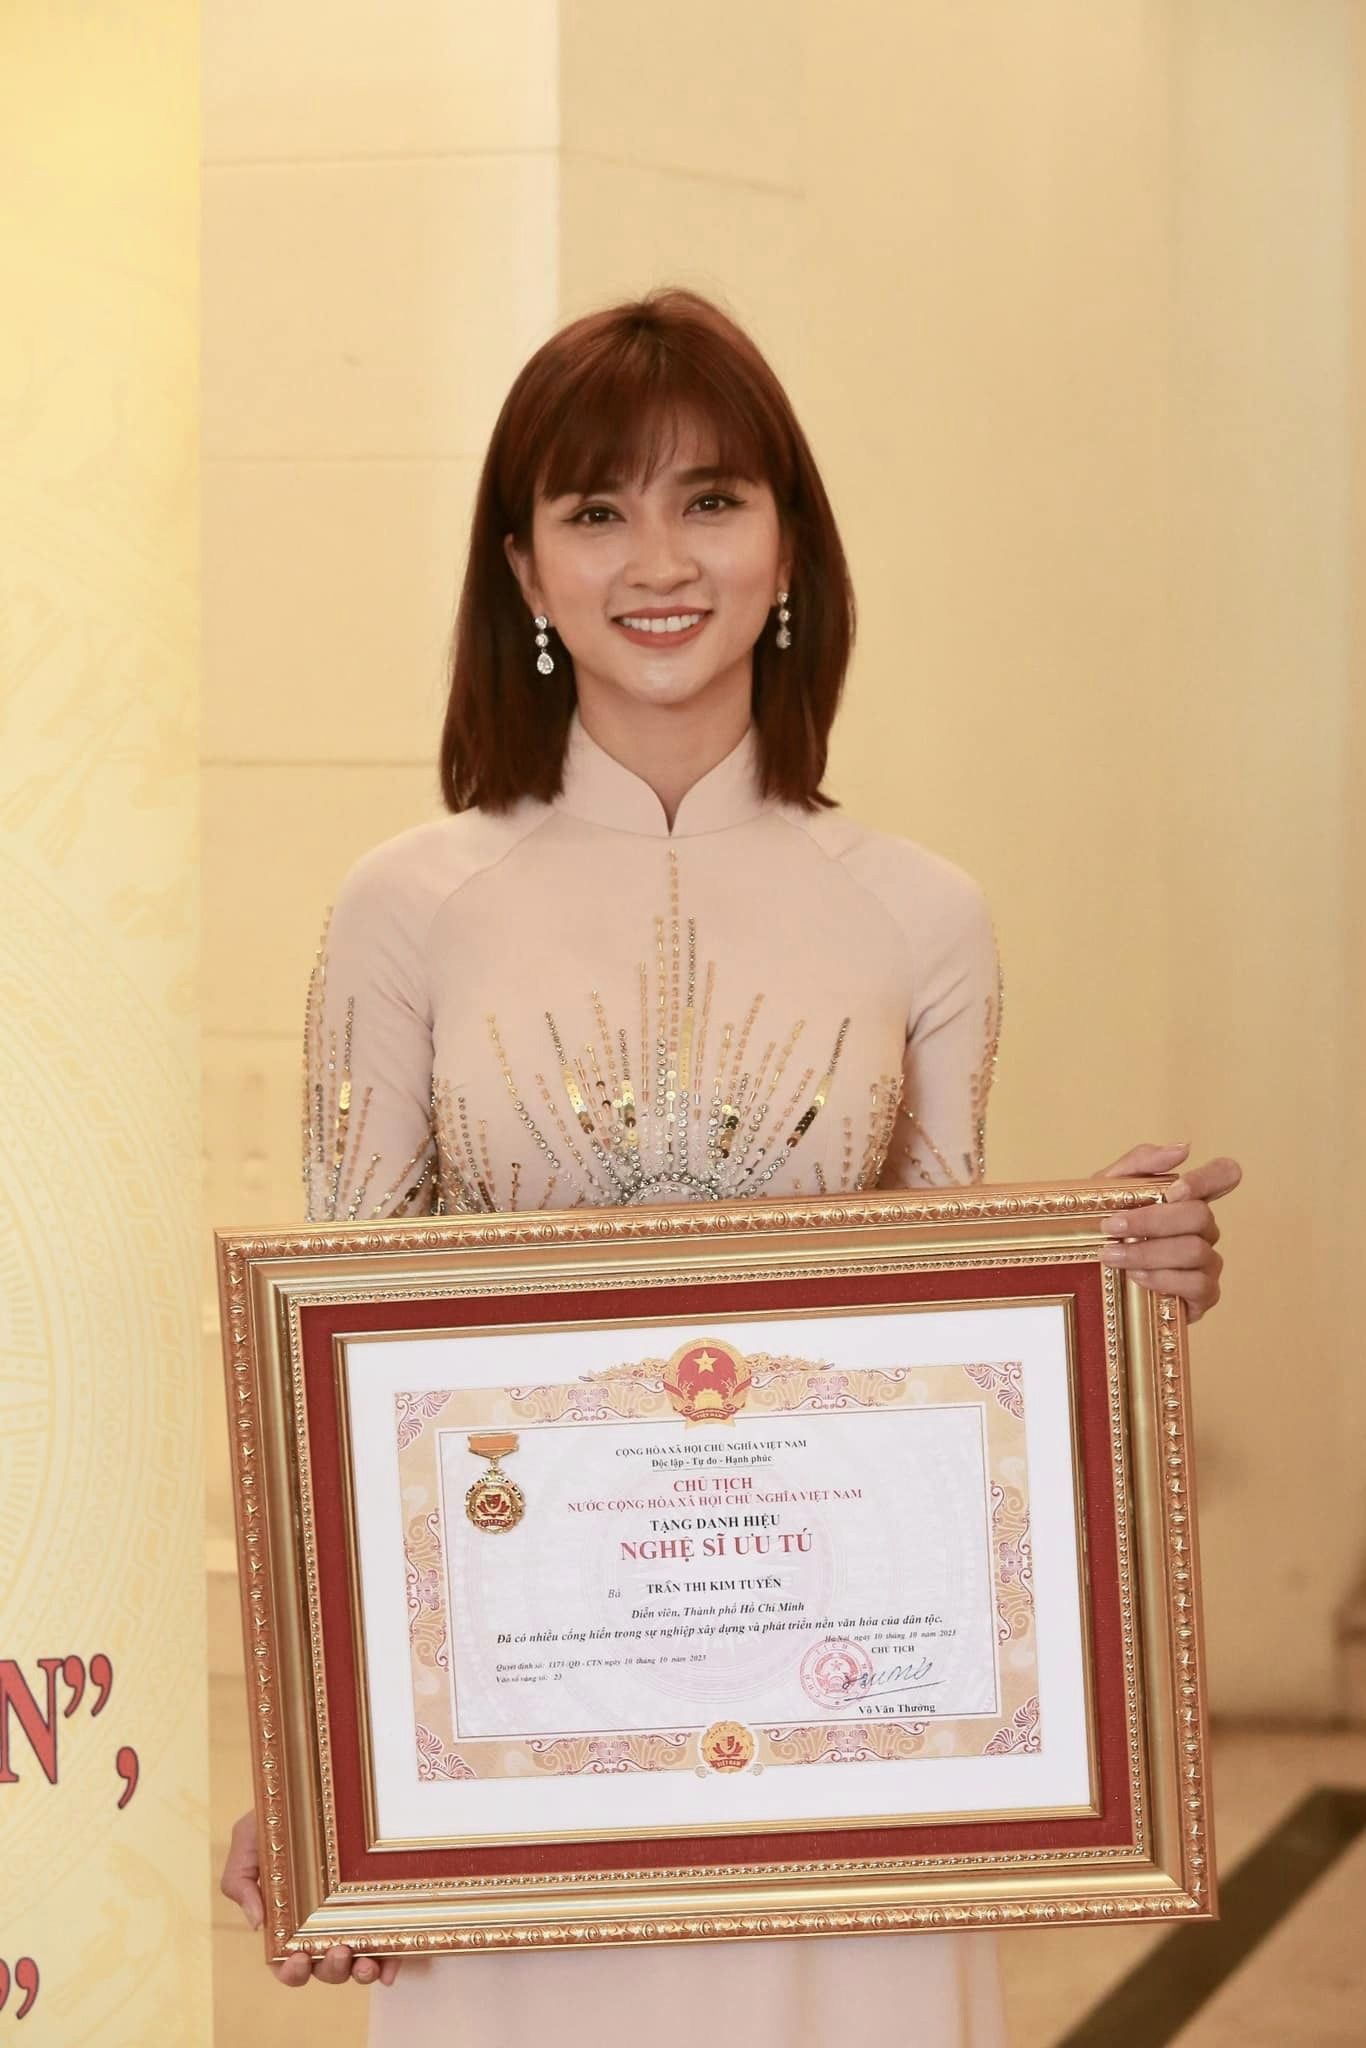 Nữ diễn viên được phong tặng danh hiệu Nghệ sĩ Ưu tú khi mới 36 tuổi